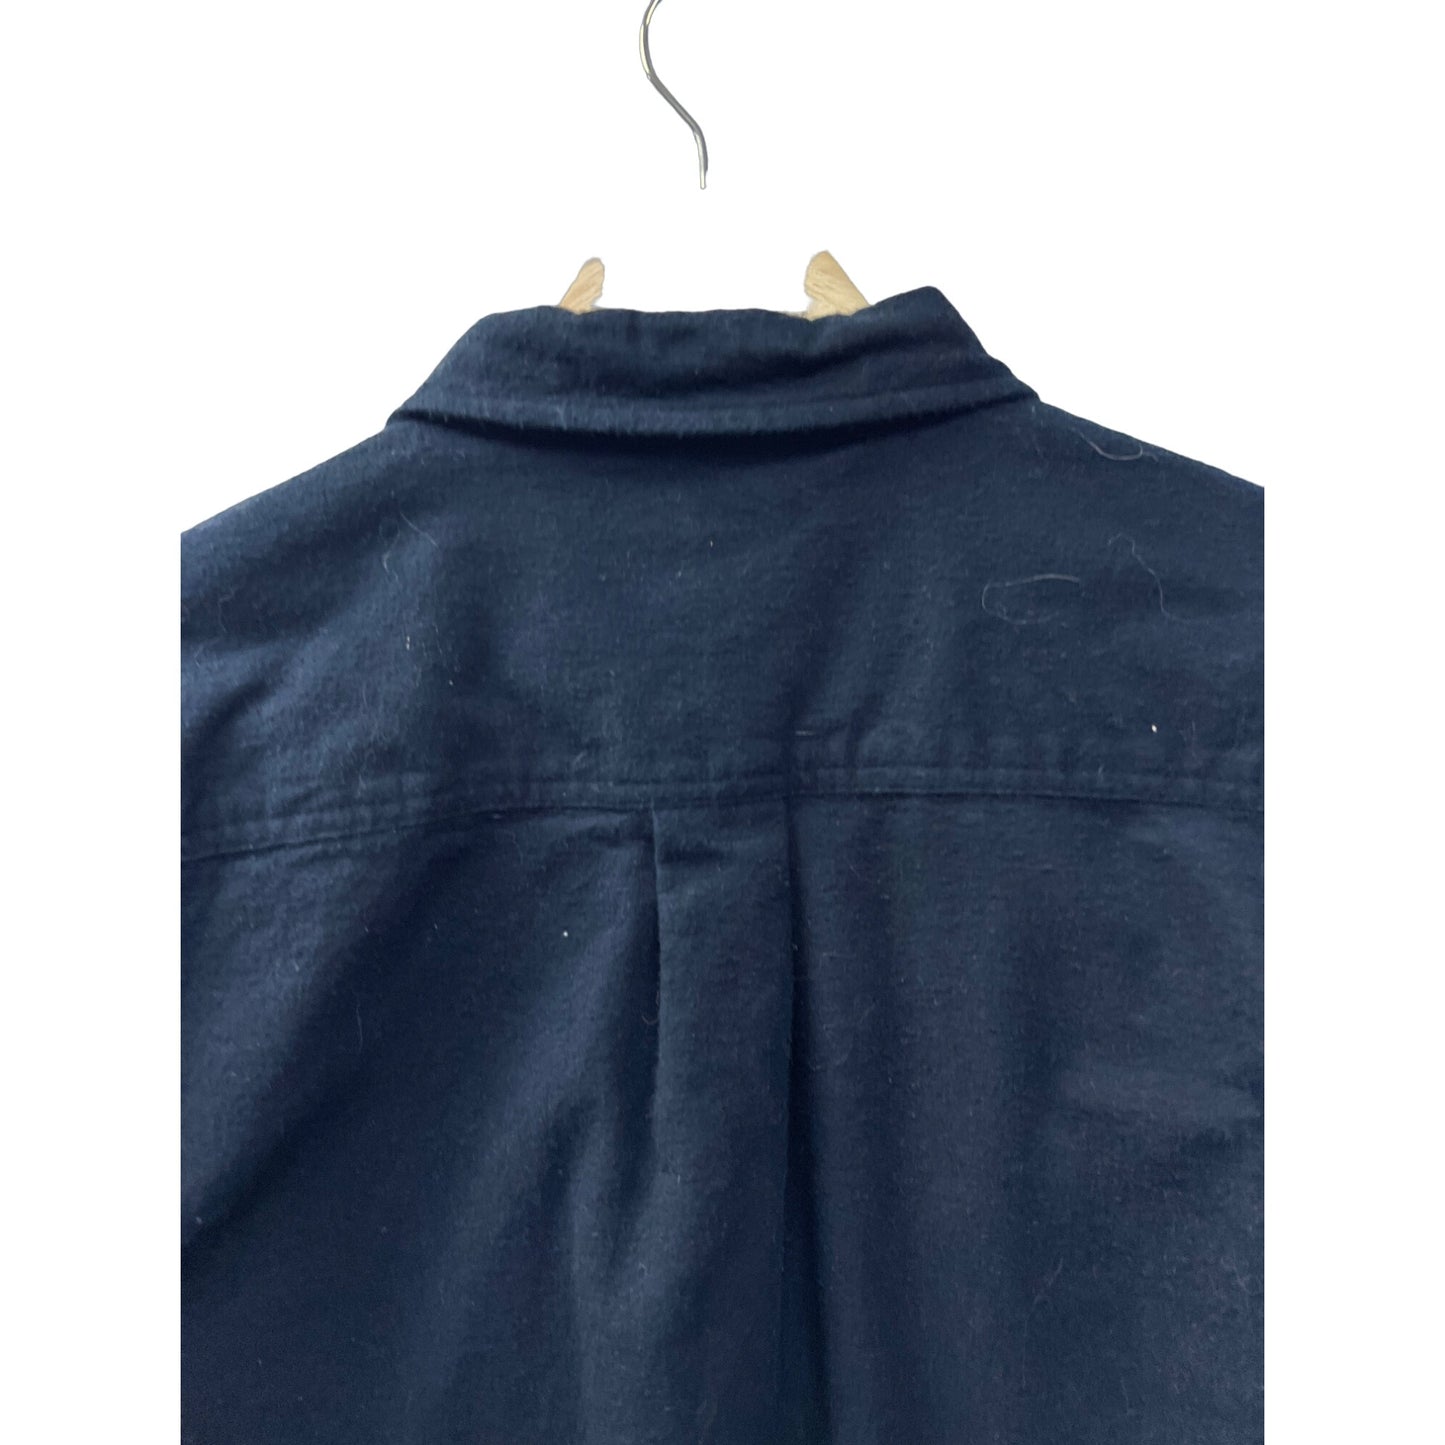 Eddie Bauer Navy Blue Heavy Cotton Flannel Button Down Shirt